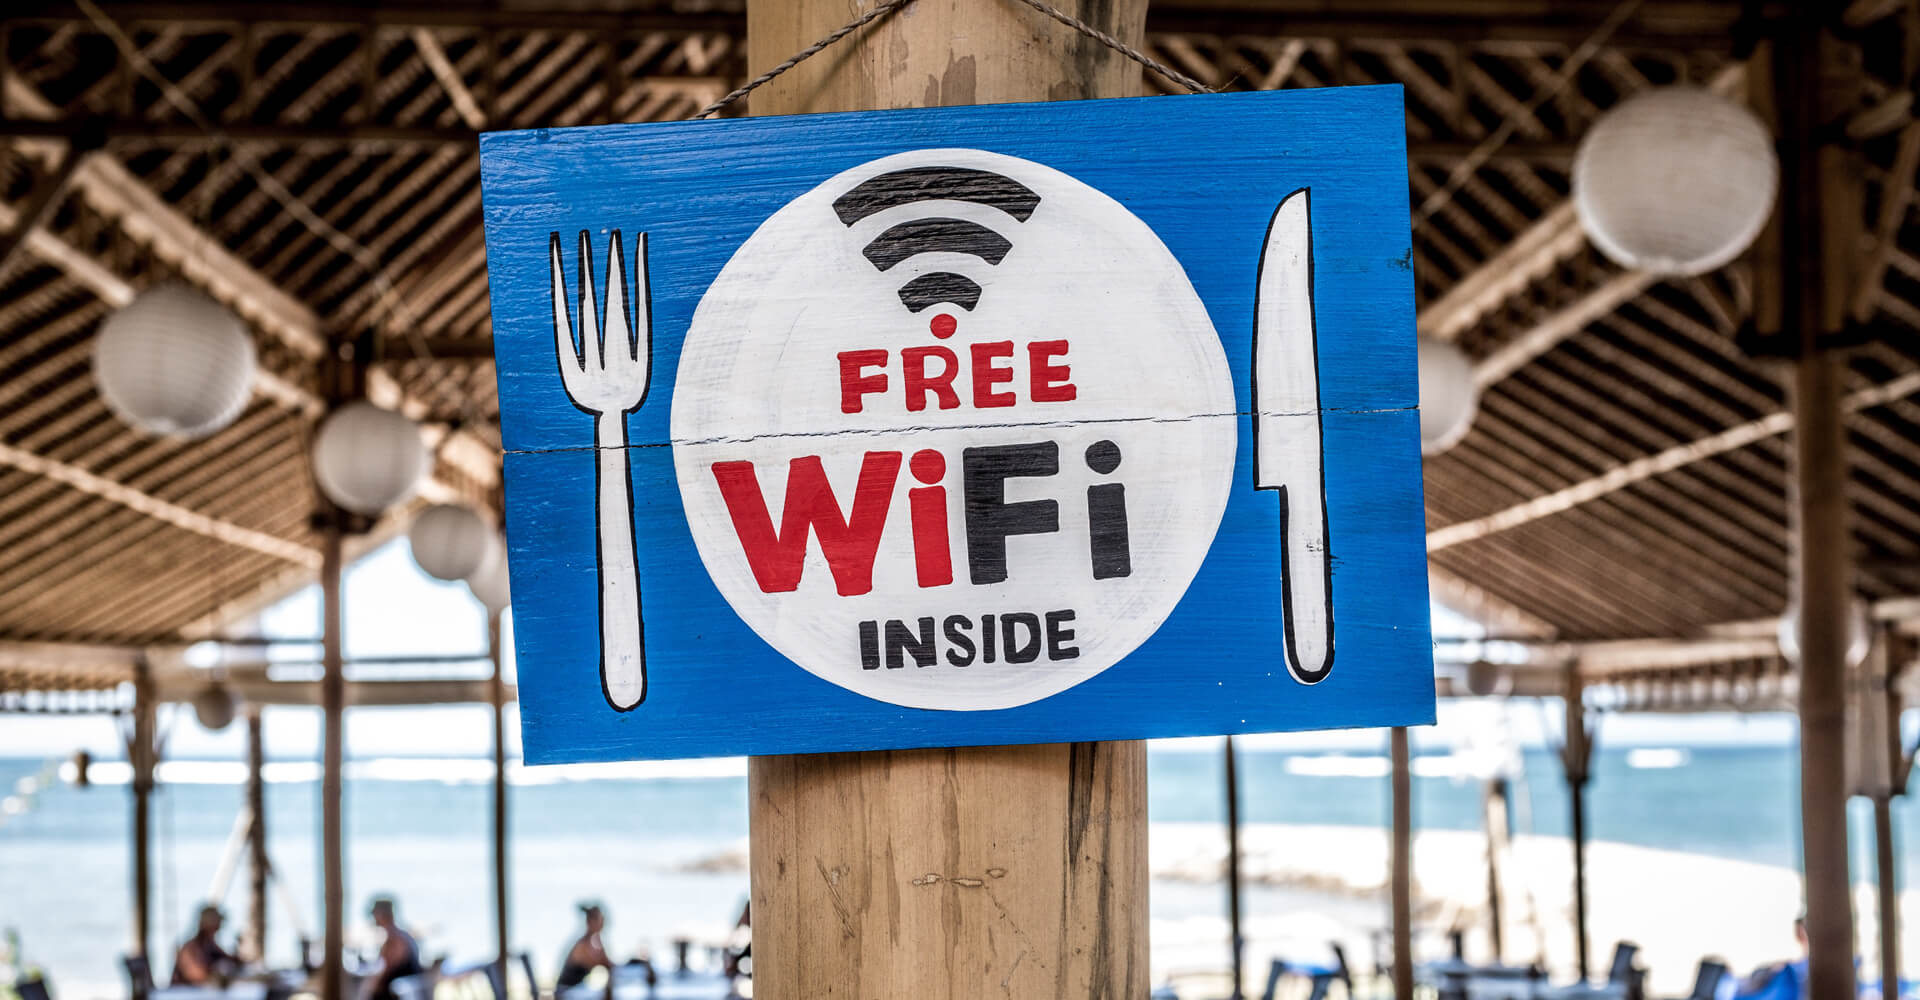 ¿Es seguro el Wi-Fi gratuito? | Avast